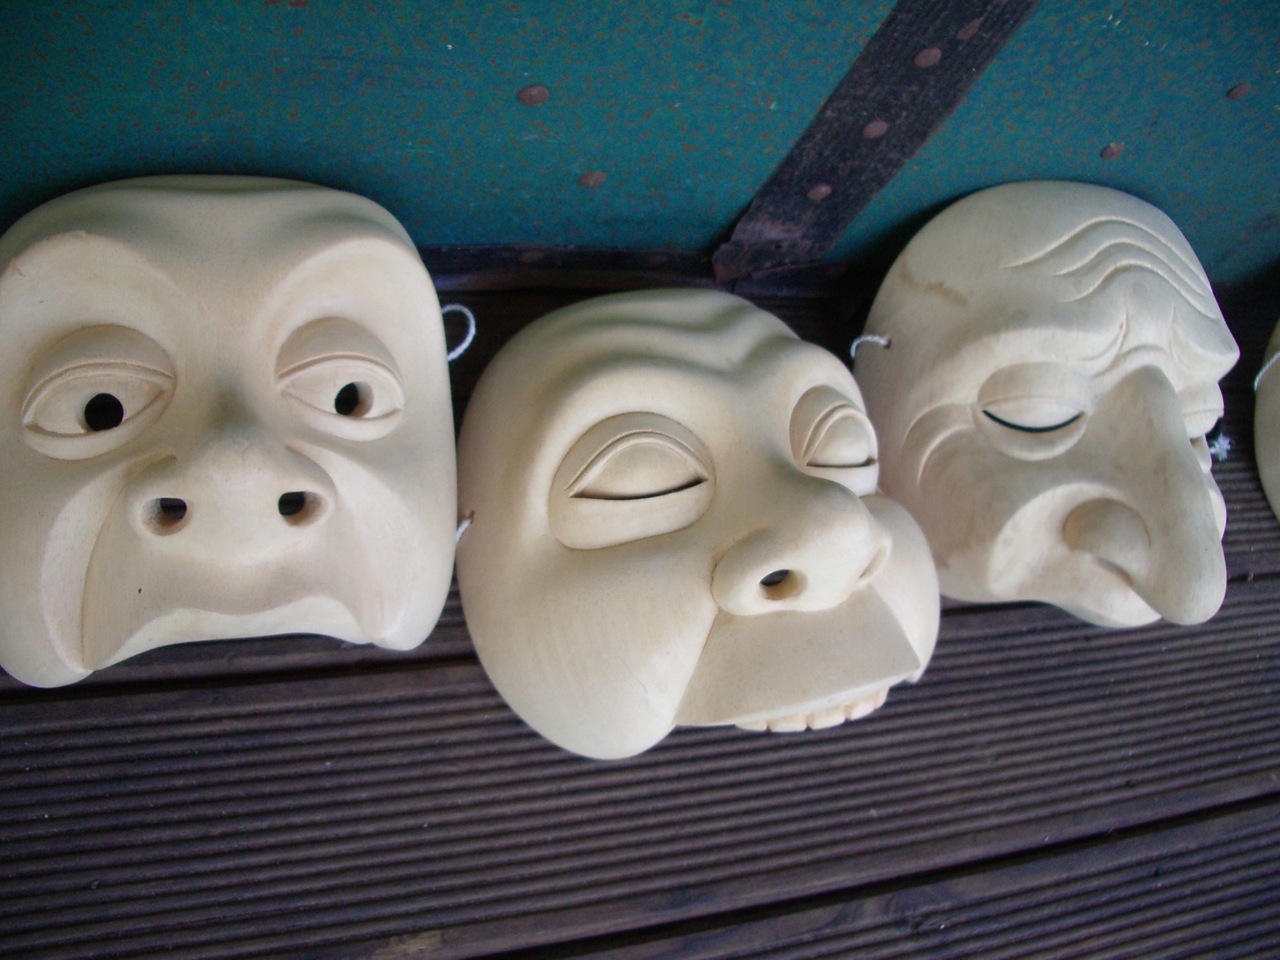 Pride, Gluttony and Envy: Masks by Bill Blaikie